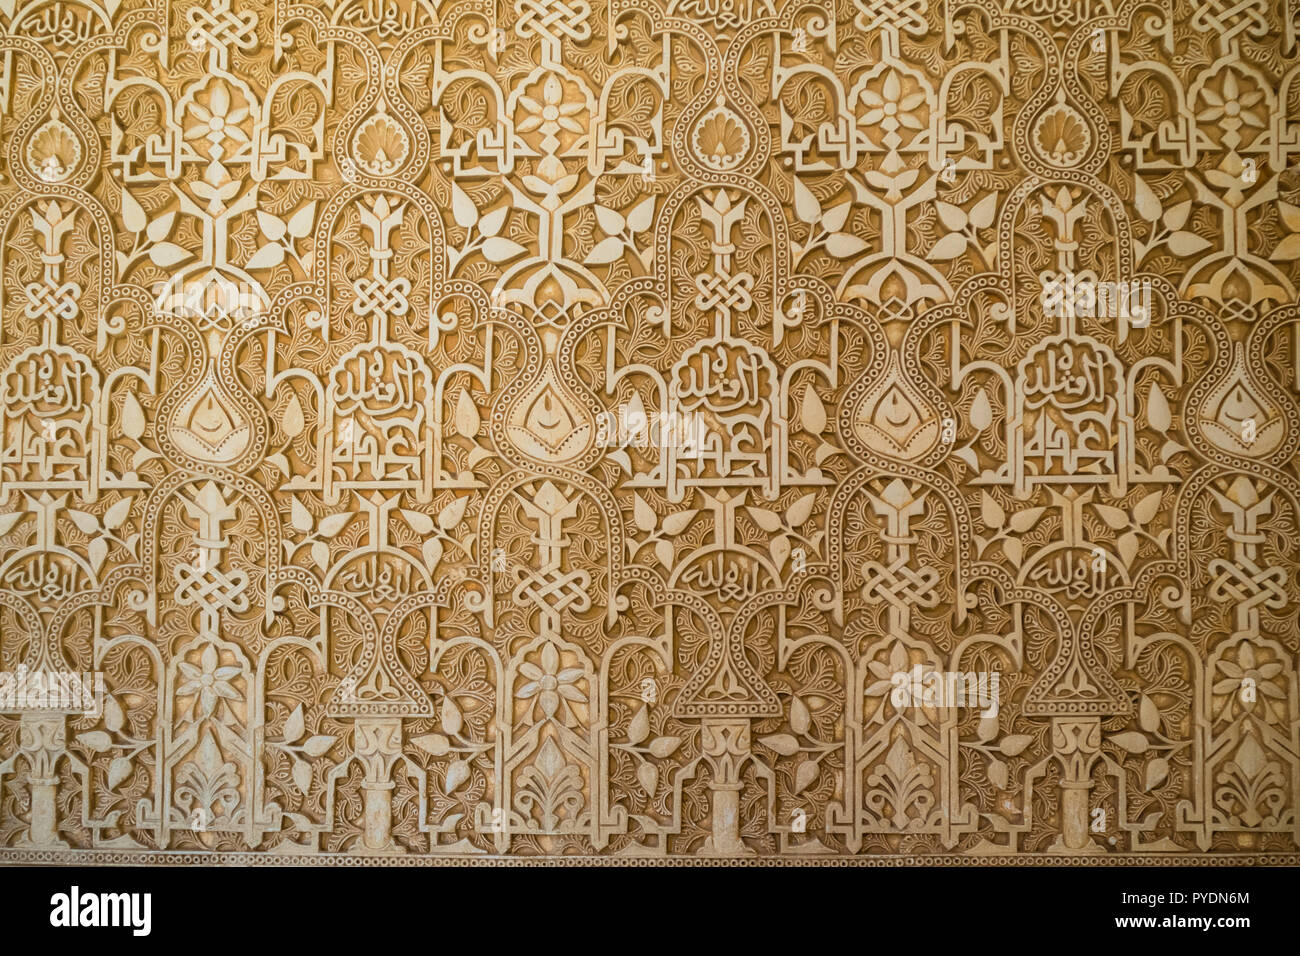 Détails à l'intérieur de l'Alhambra, Grenade Banque D'Images